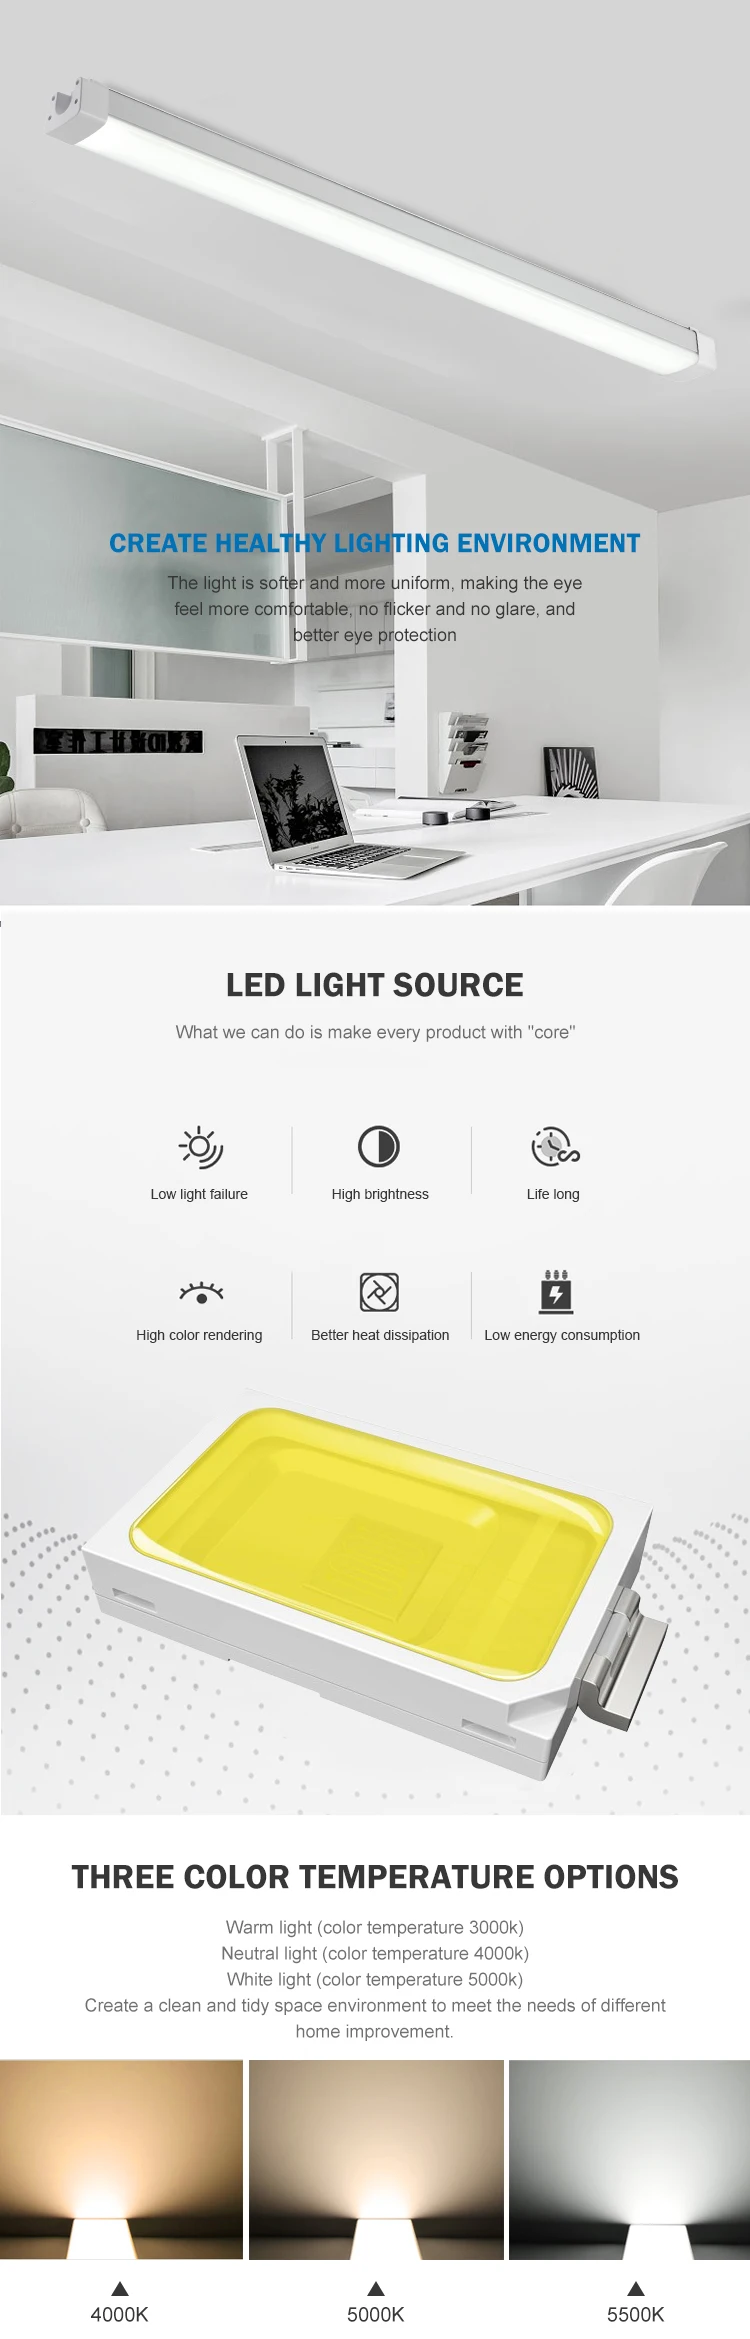 Halcon lighting waterproof ip65 indoor 4ft 8ft 36w 60w led slim tri-proof light